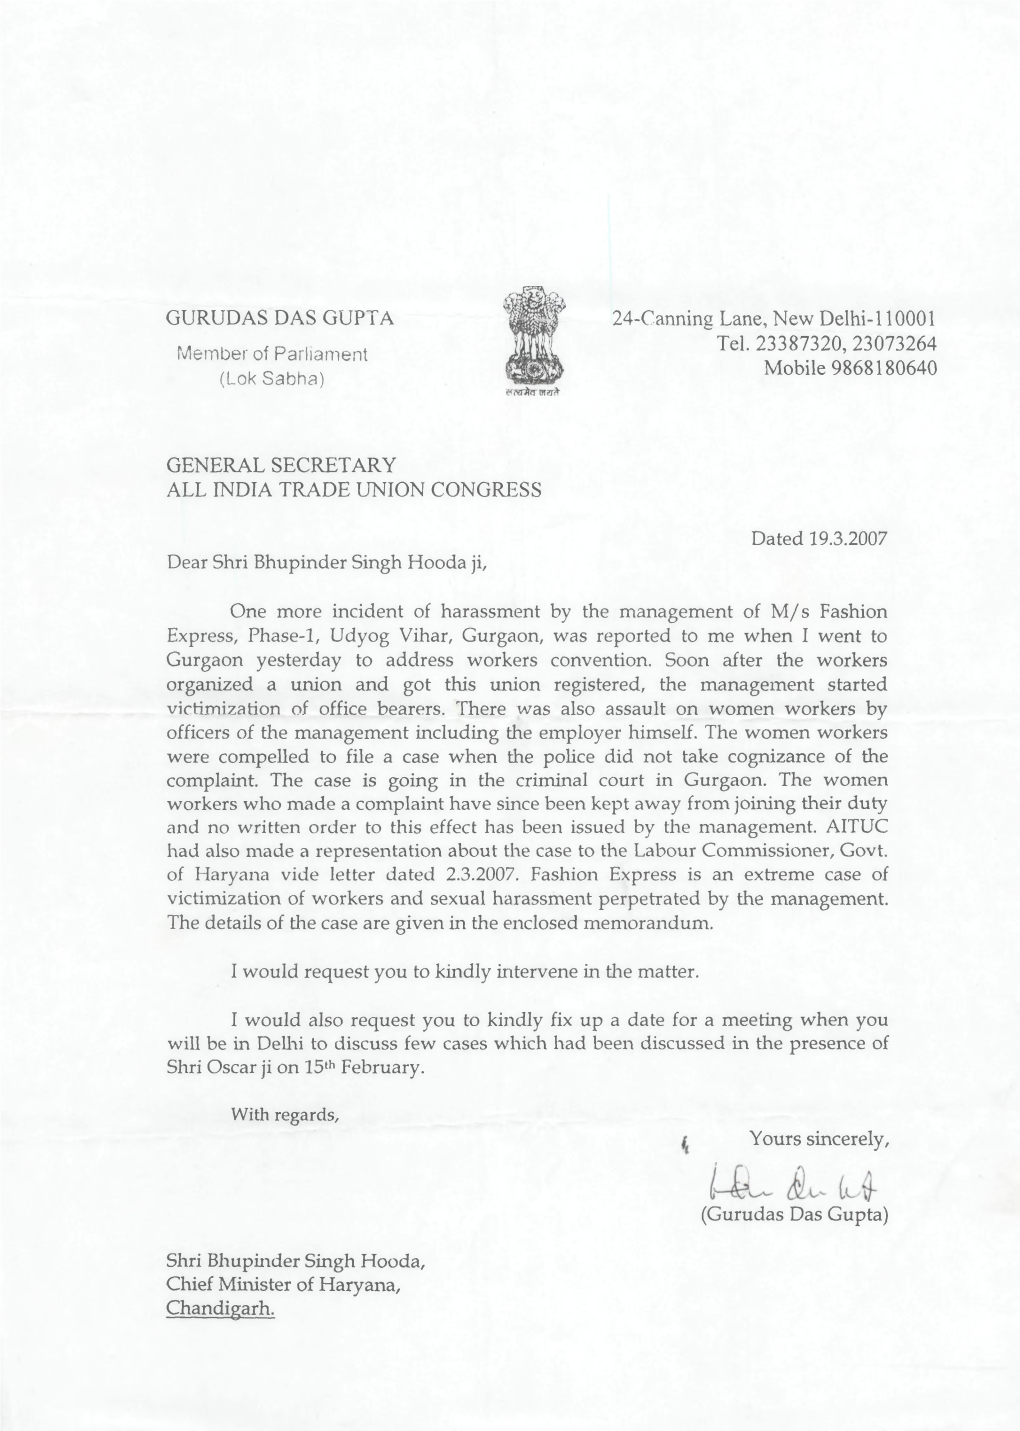 Letter from Gurudas Das Gupta, General